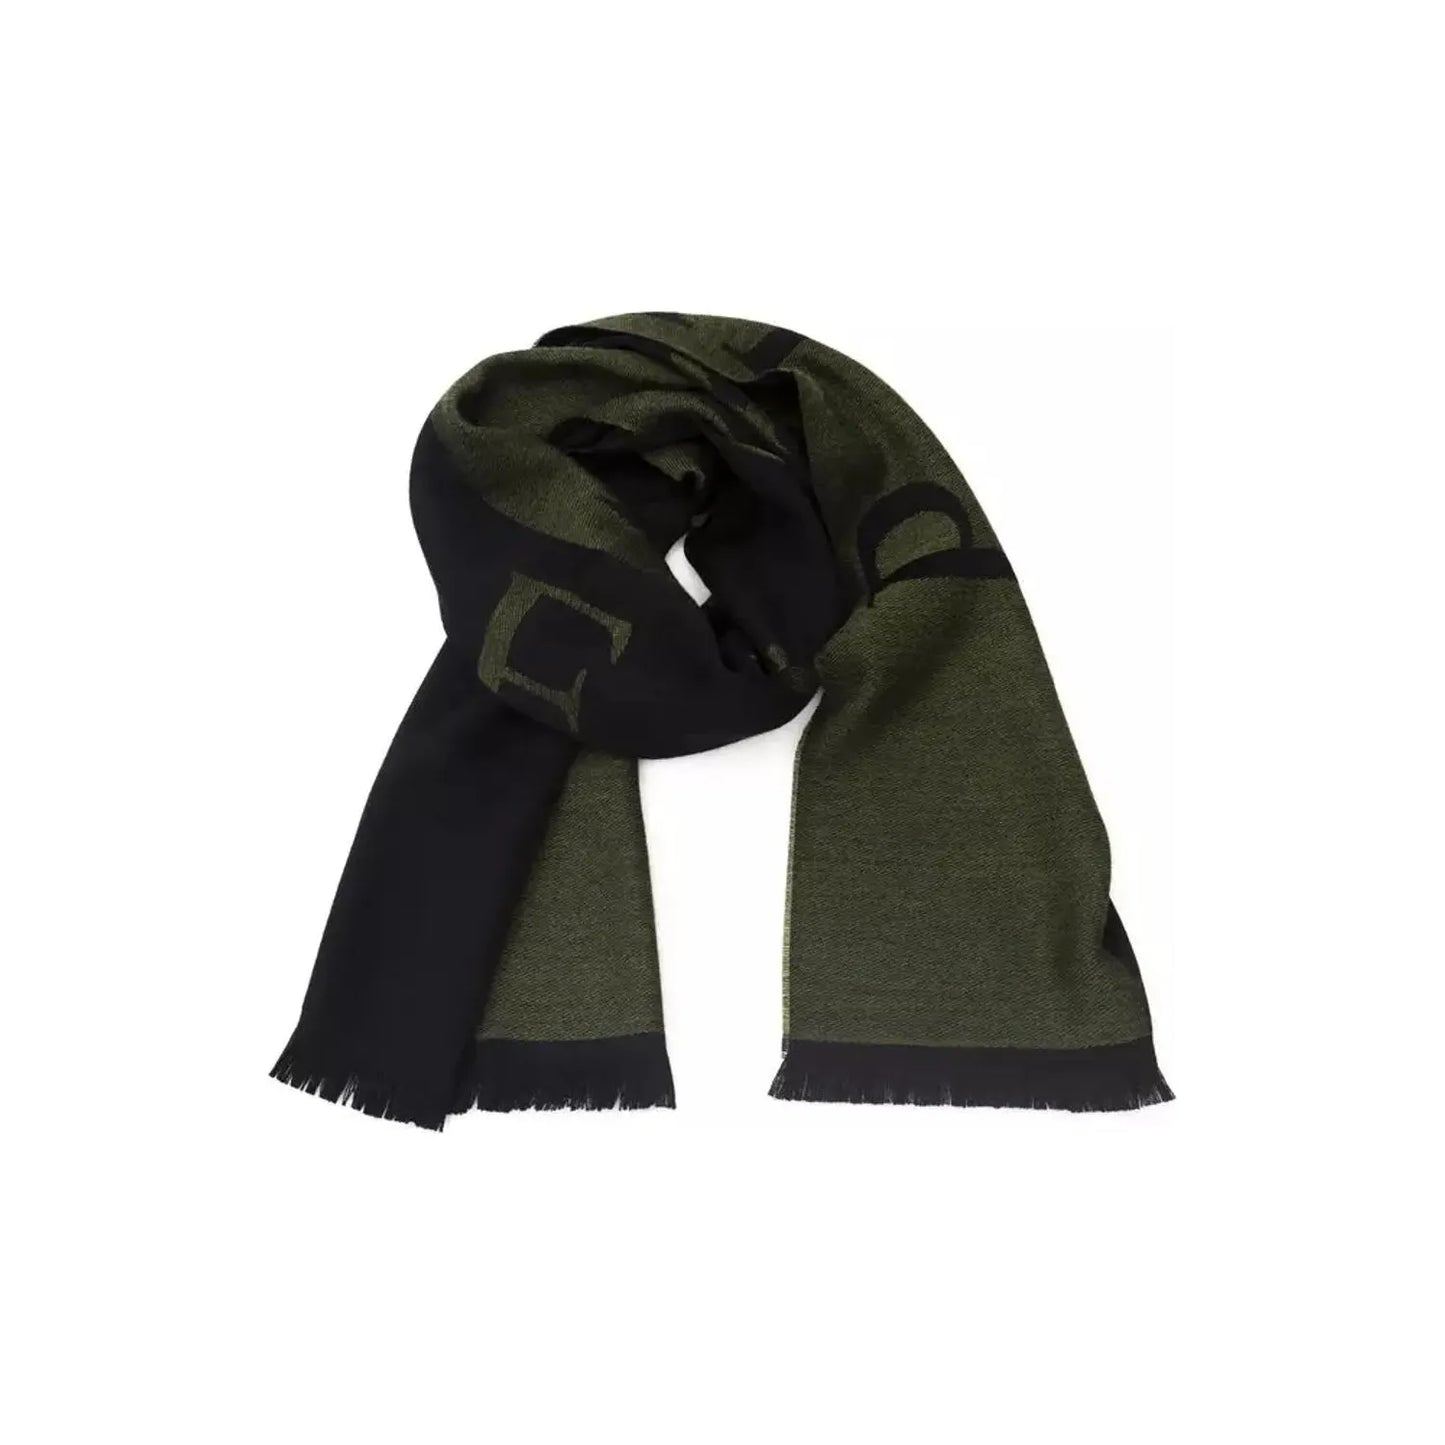 Philipp Plein Elegant Green Fringed Scarf Wool Wrap Shawl Scarf green-wool-scarf product-22235-539056814-24-f6cc9d95-ee2.webp